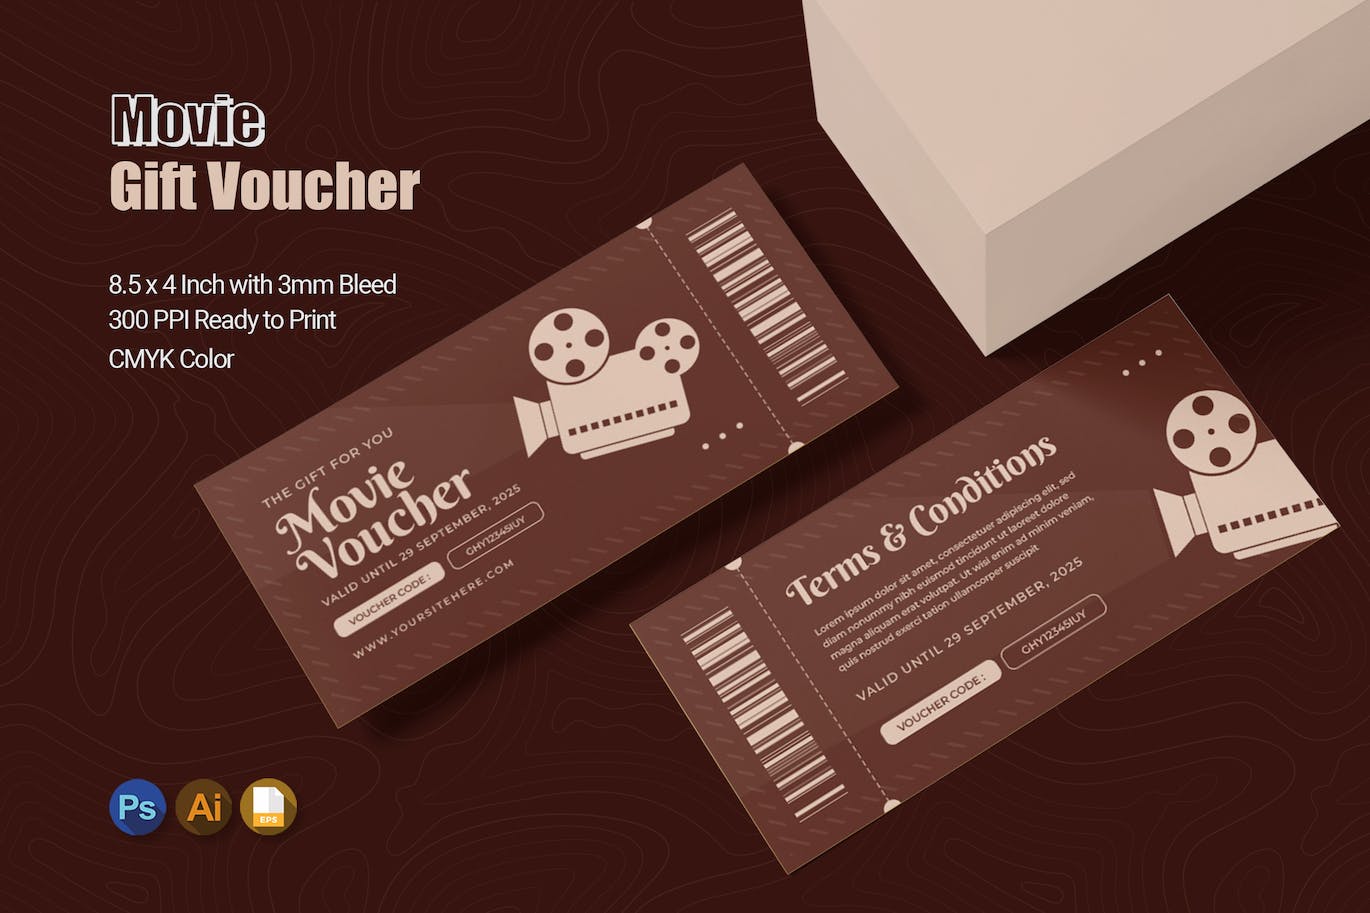 电影礼品优惠券模板 Movie Gift Voucher 设计素材 第1张